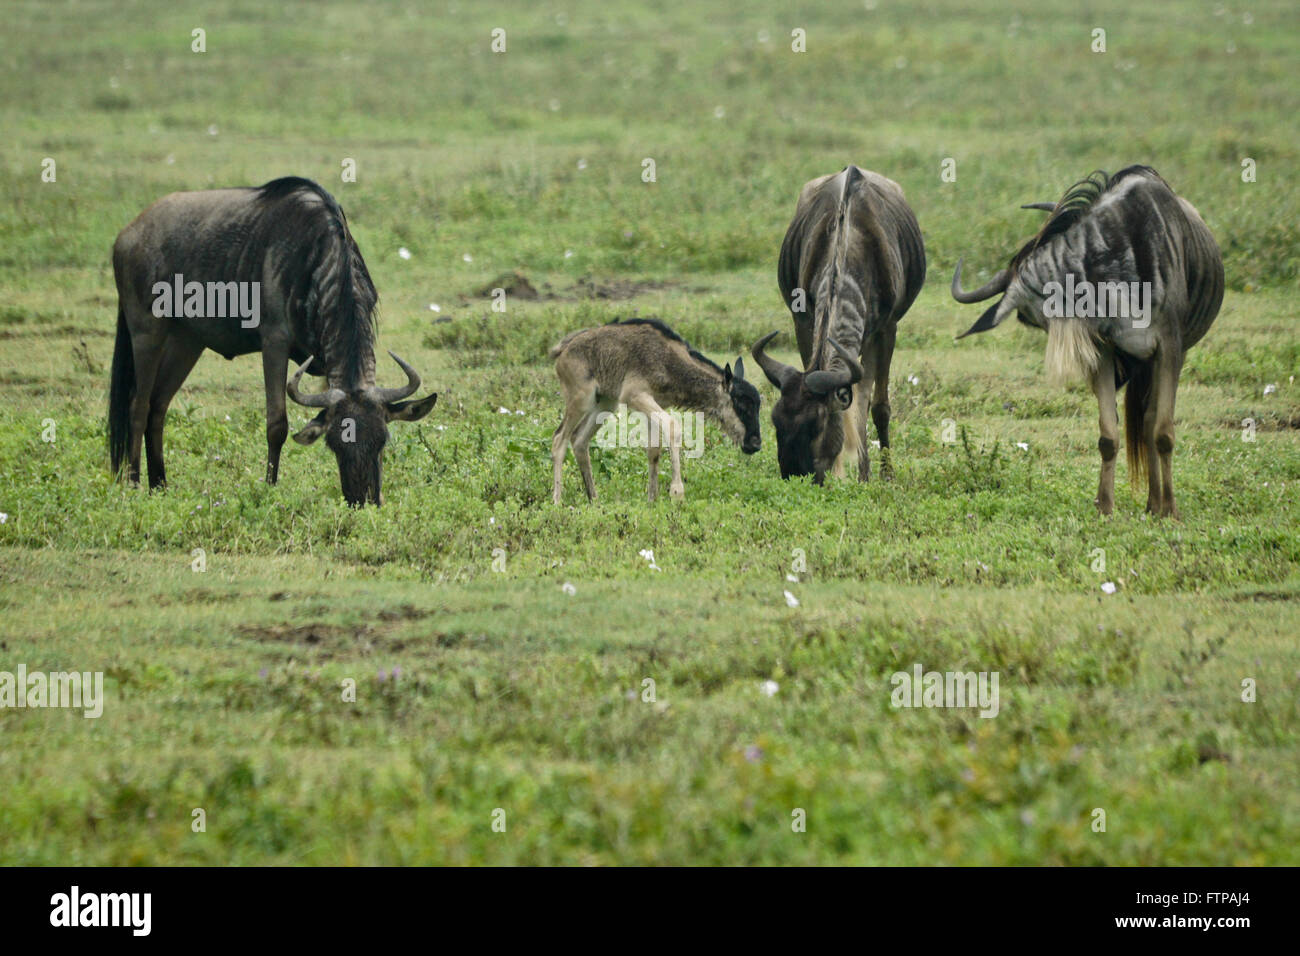 Wildebeests with newborn calf, Ngorongoro Crater, Tanzania Stock Photo